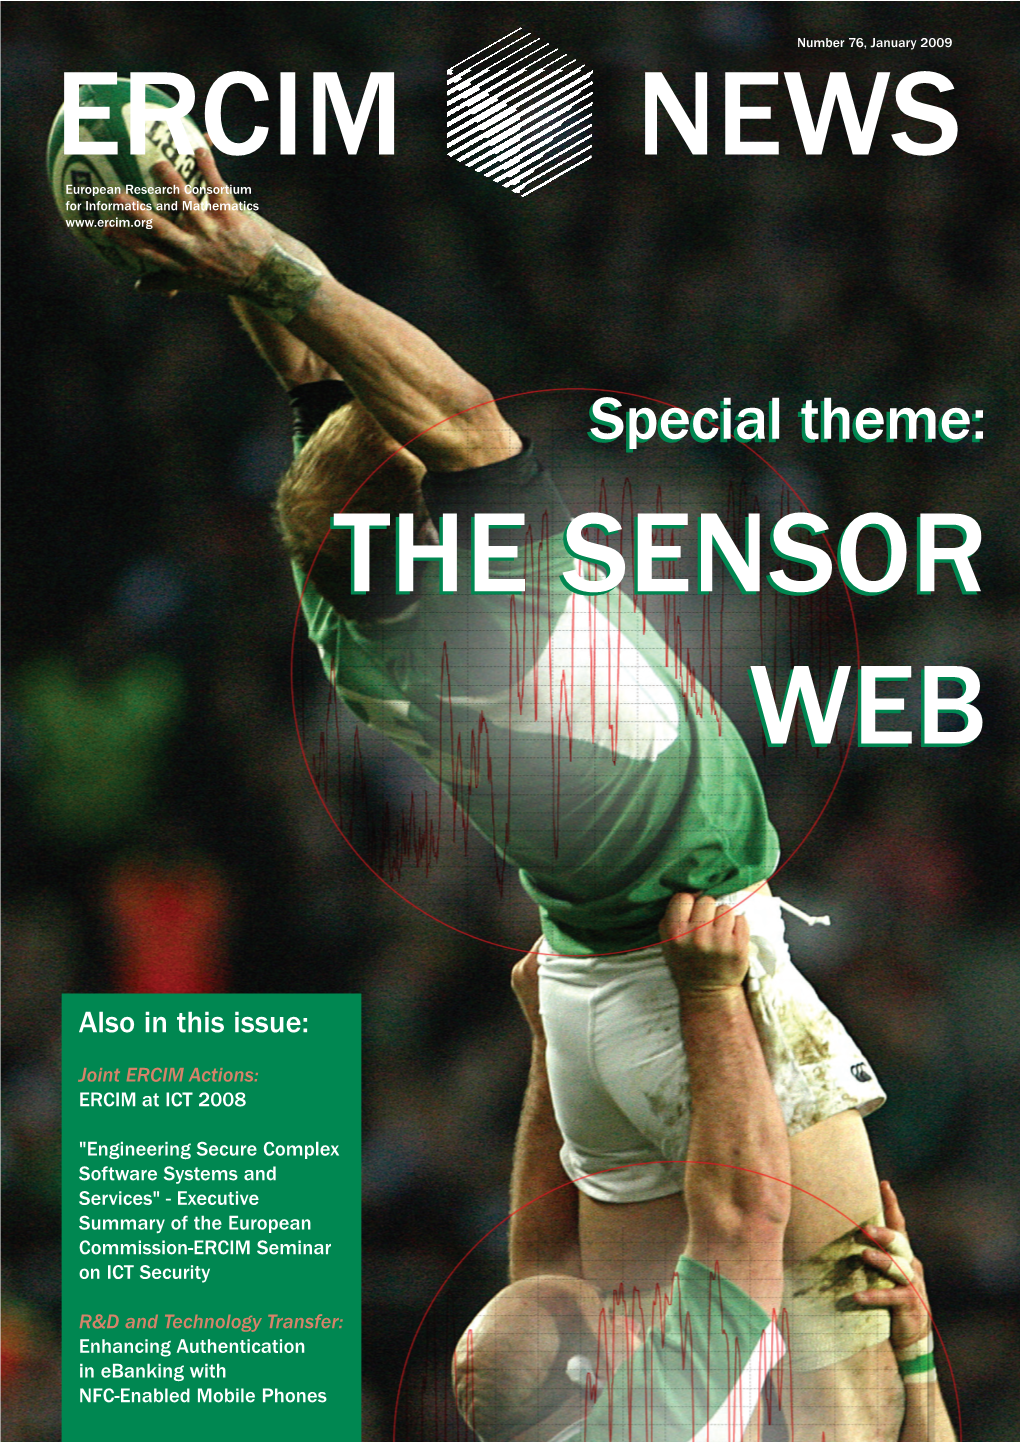 The Sensorsensor Webweb